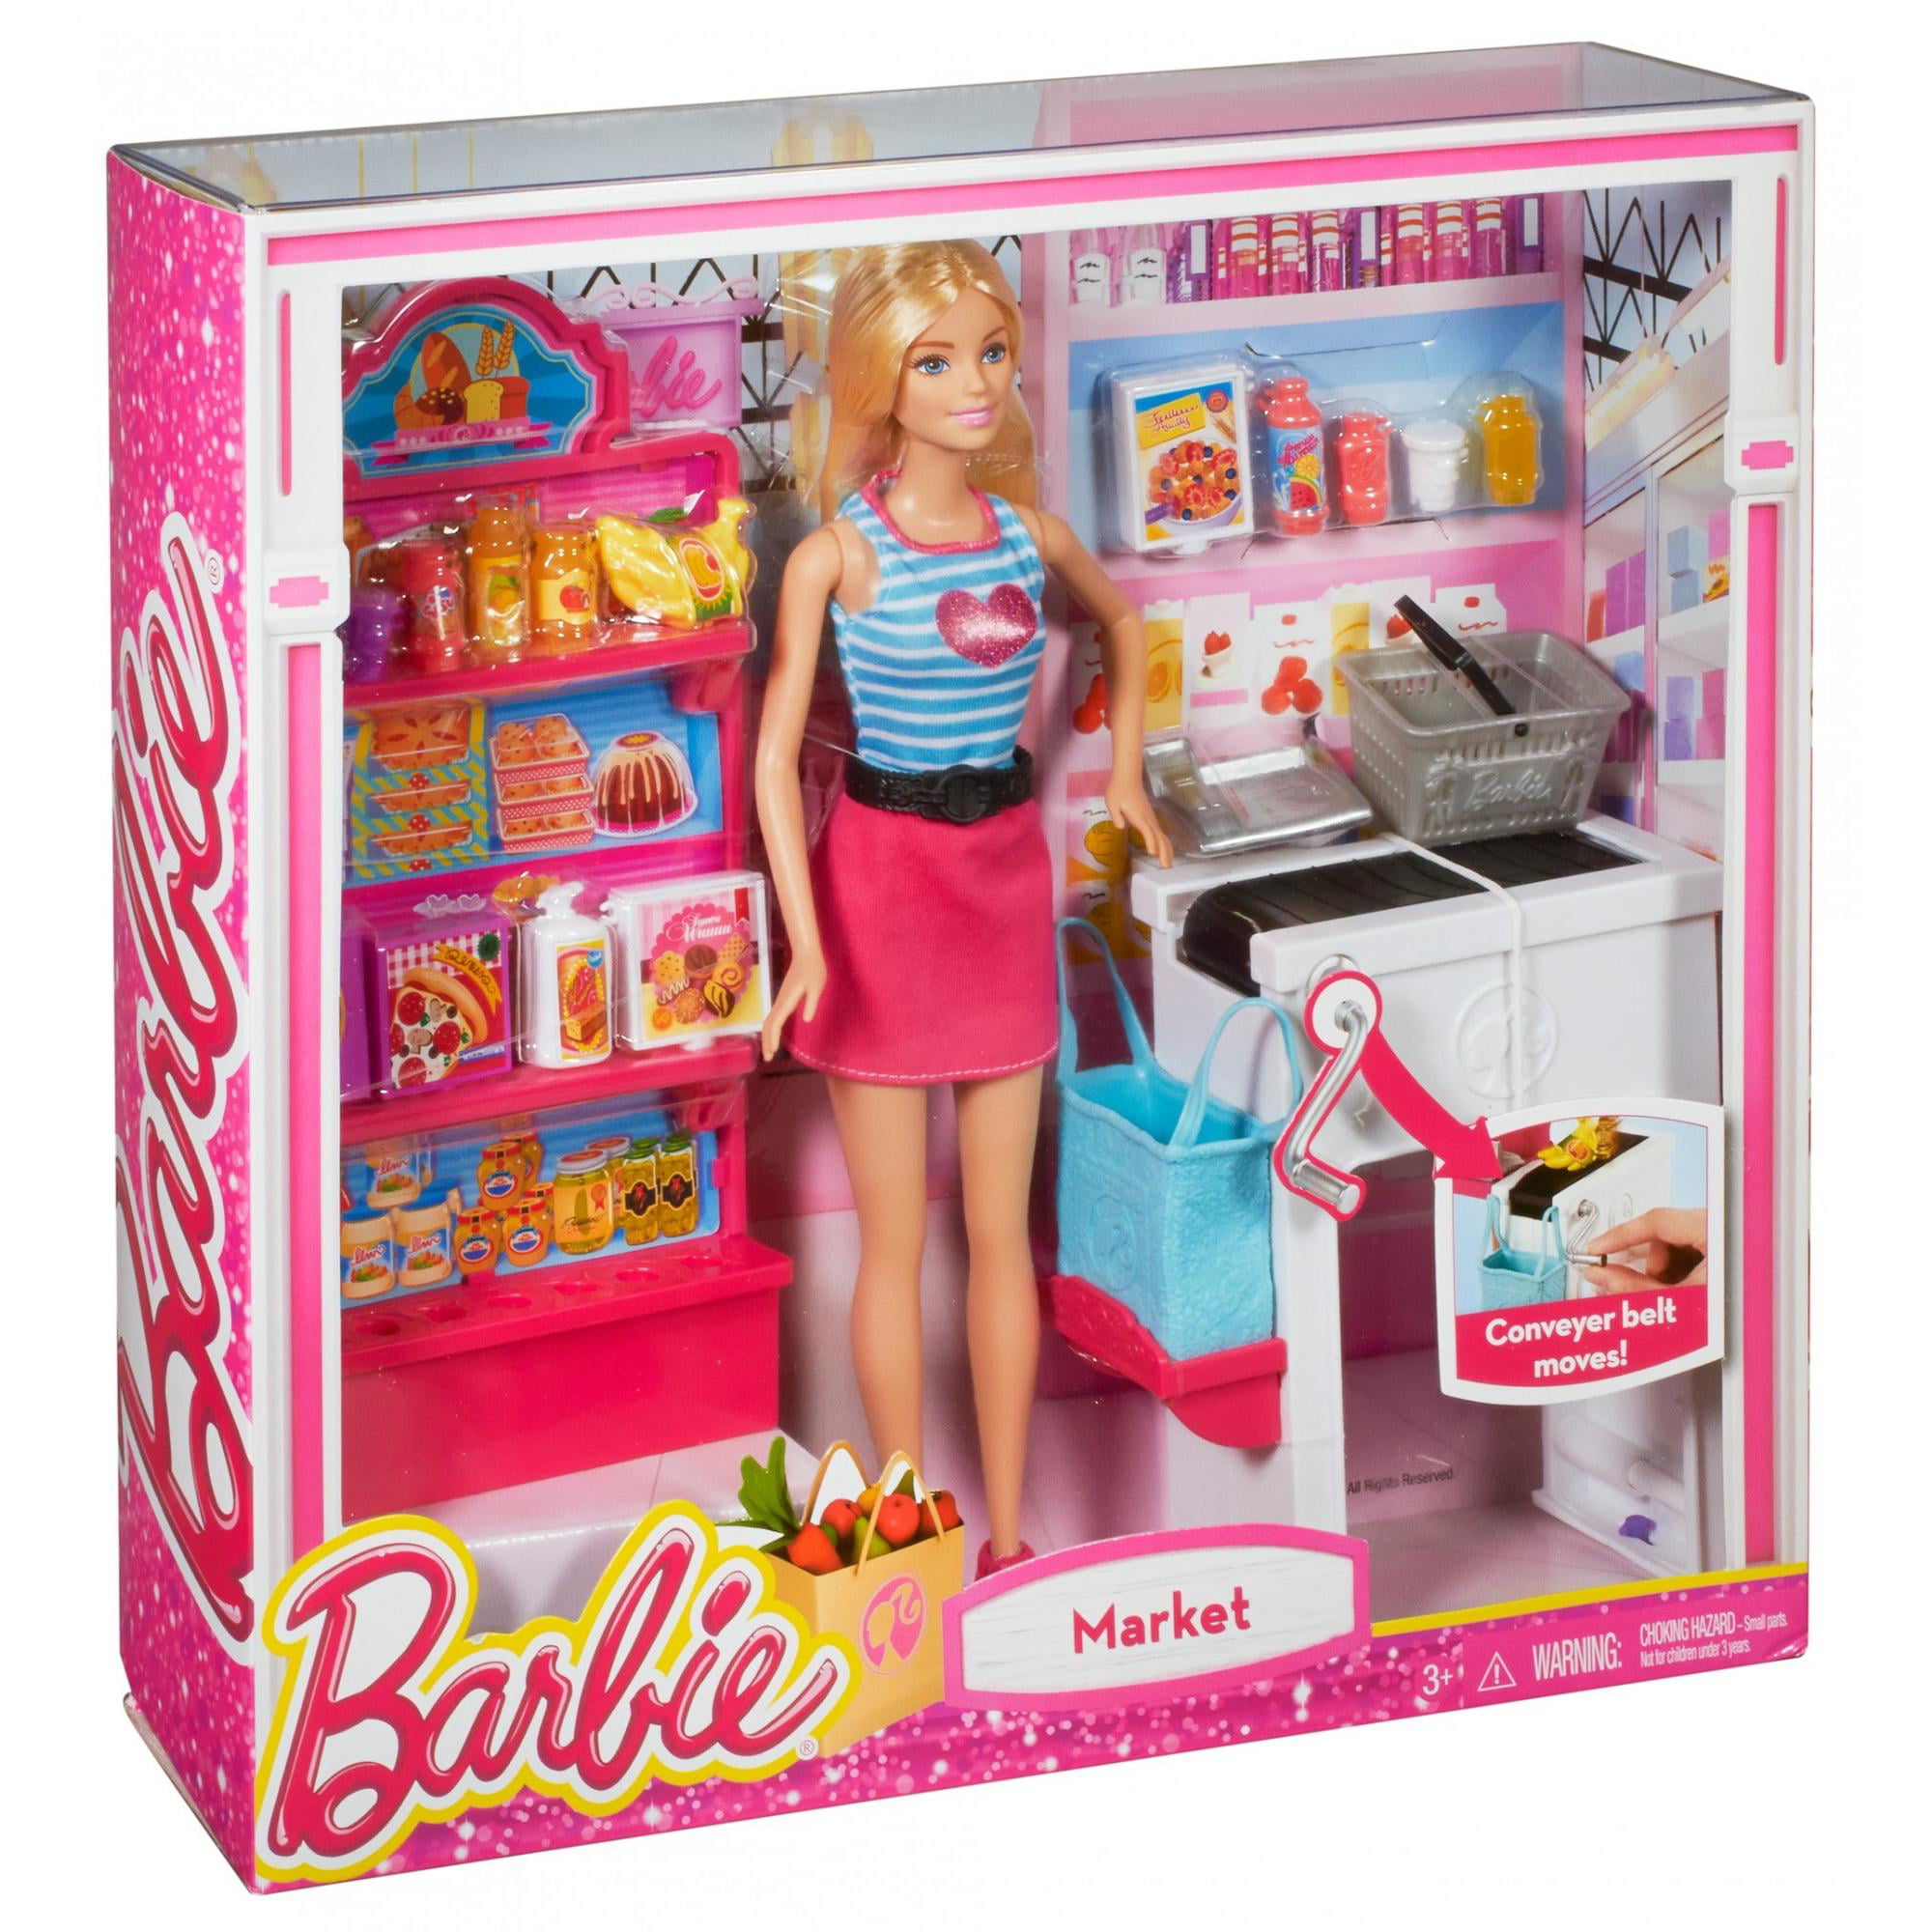 Игрушка барби купить. Набор Barbie продуктовый магазин Малибу, 29 см, ckp77. Кукла Барби Walmart. Игровой набор Барби супермаркет. Куклы Барби магазин супермаркет.